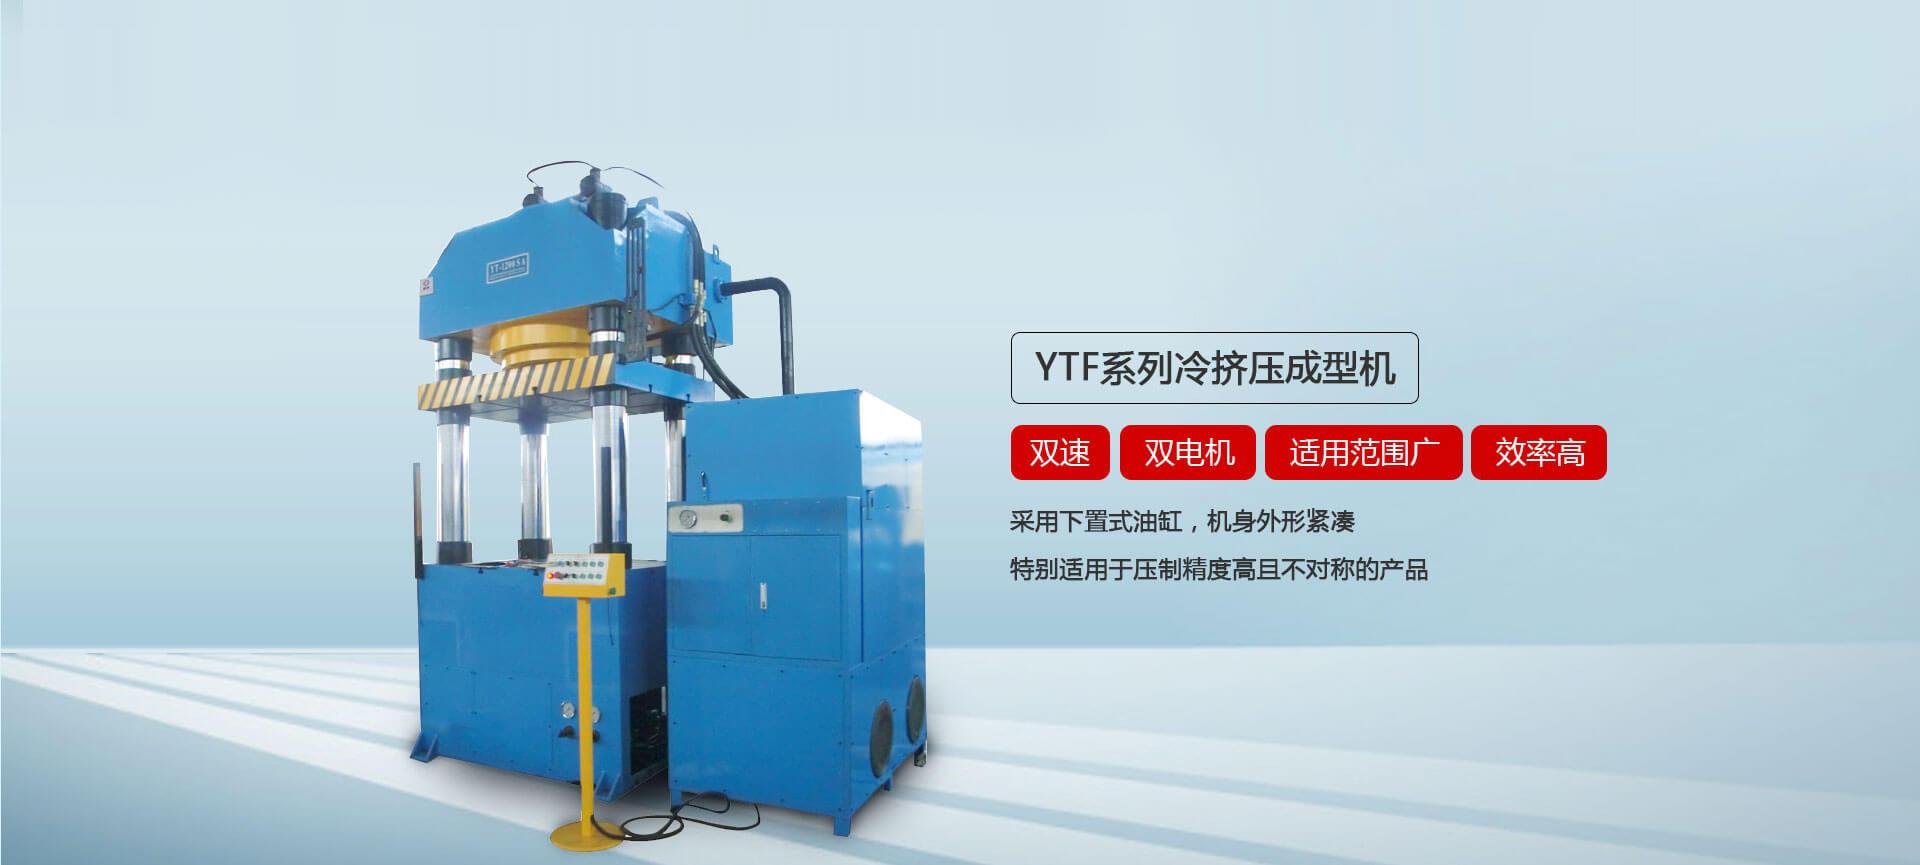 YTF系列冷擠壓成型液壓機